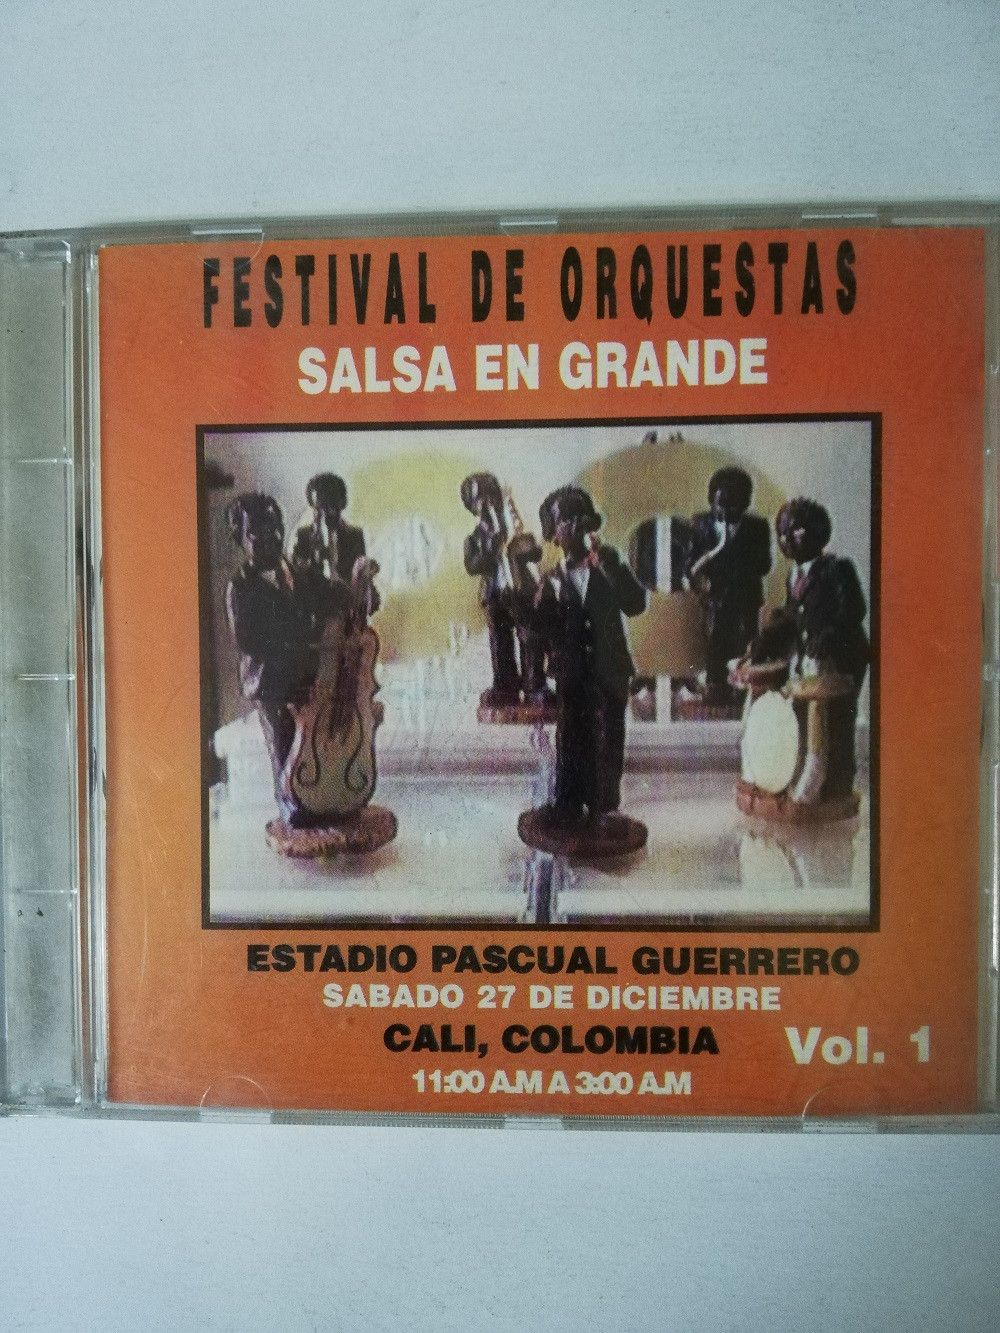 Imagen CD FESTIVAL DE ORQUESTAS - SALSA EN GRANDE VOL. 1 1